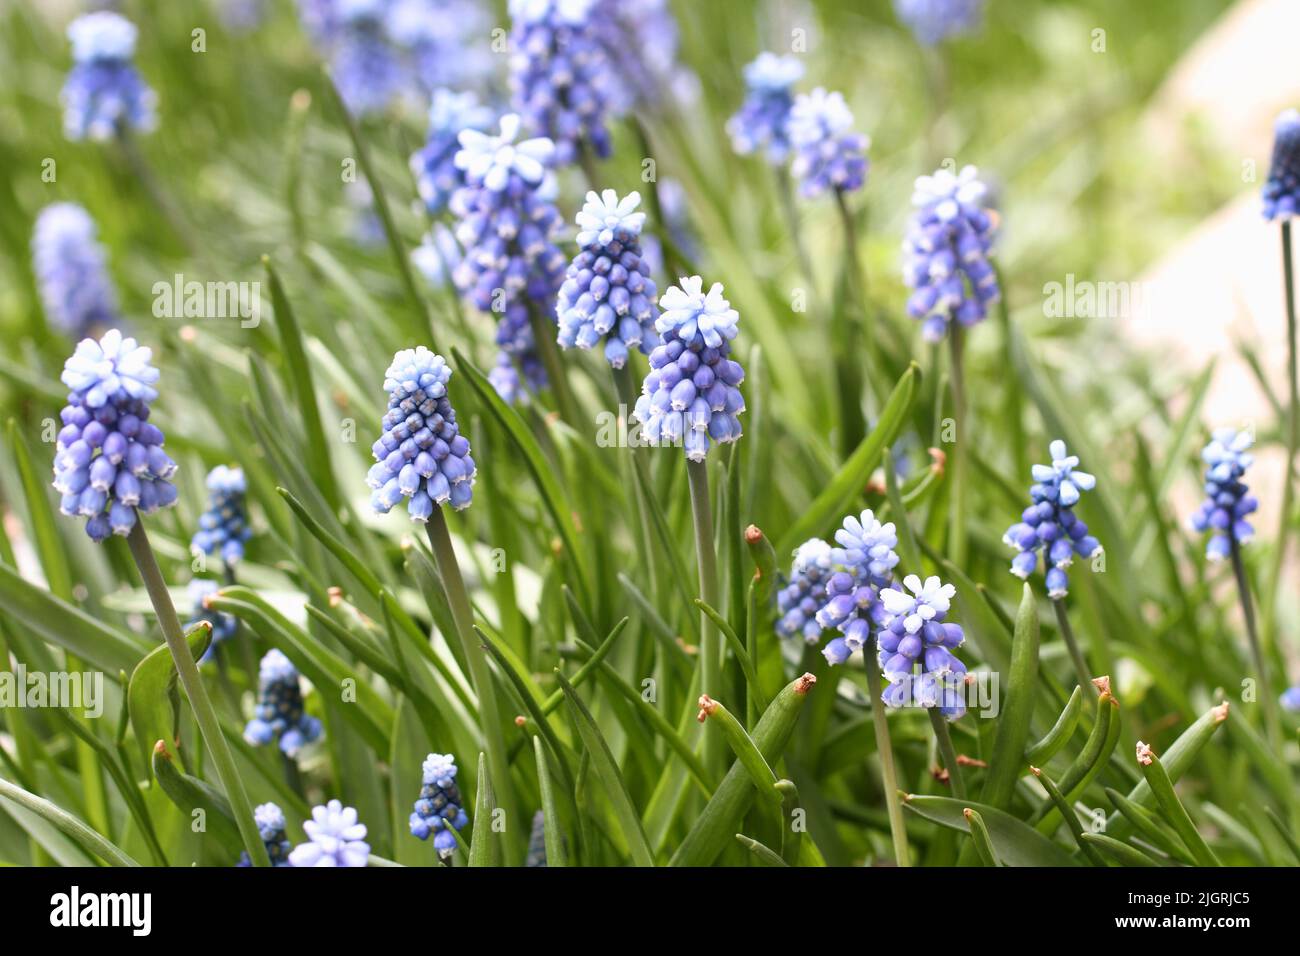 Primroses Muscari bleues dans un lit de fleurs dans le parc. Gros plan Banque D'Images